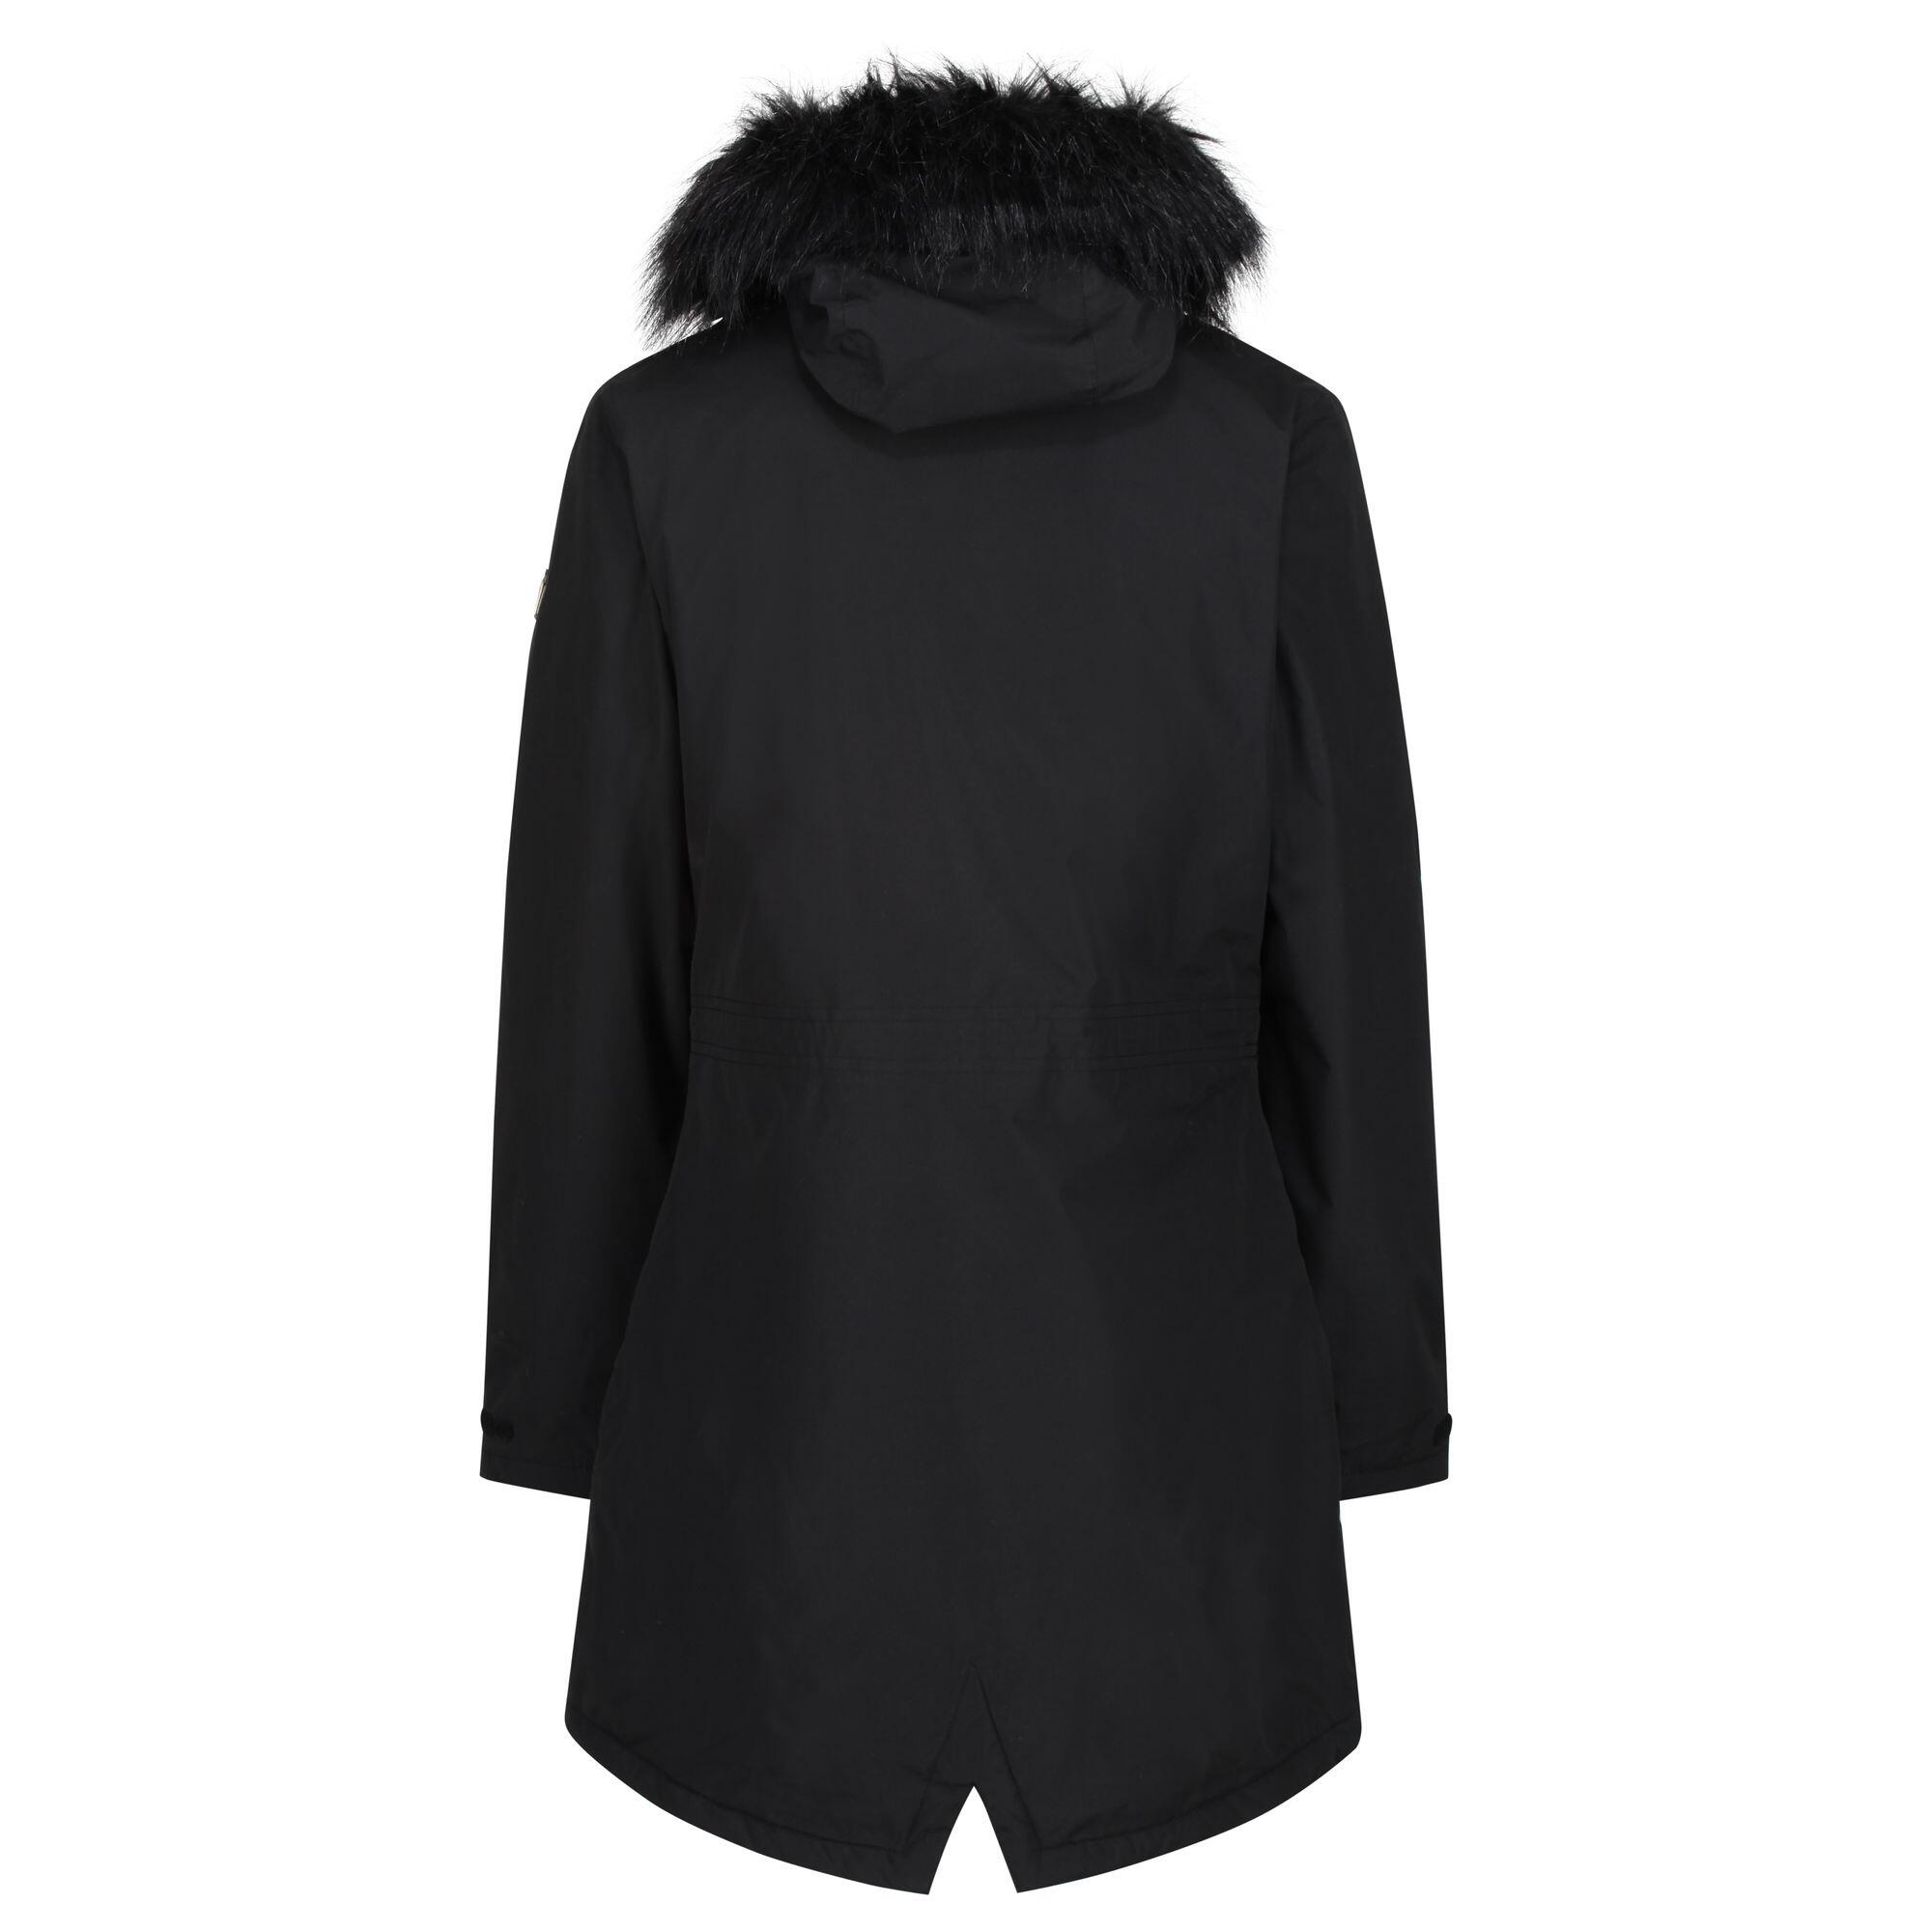 Womens/Ladies Serleena Fur Trimmed Waterproof Parka Jacket (Black) 2/5